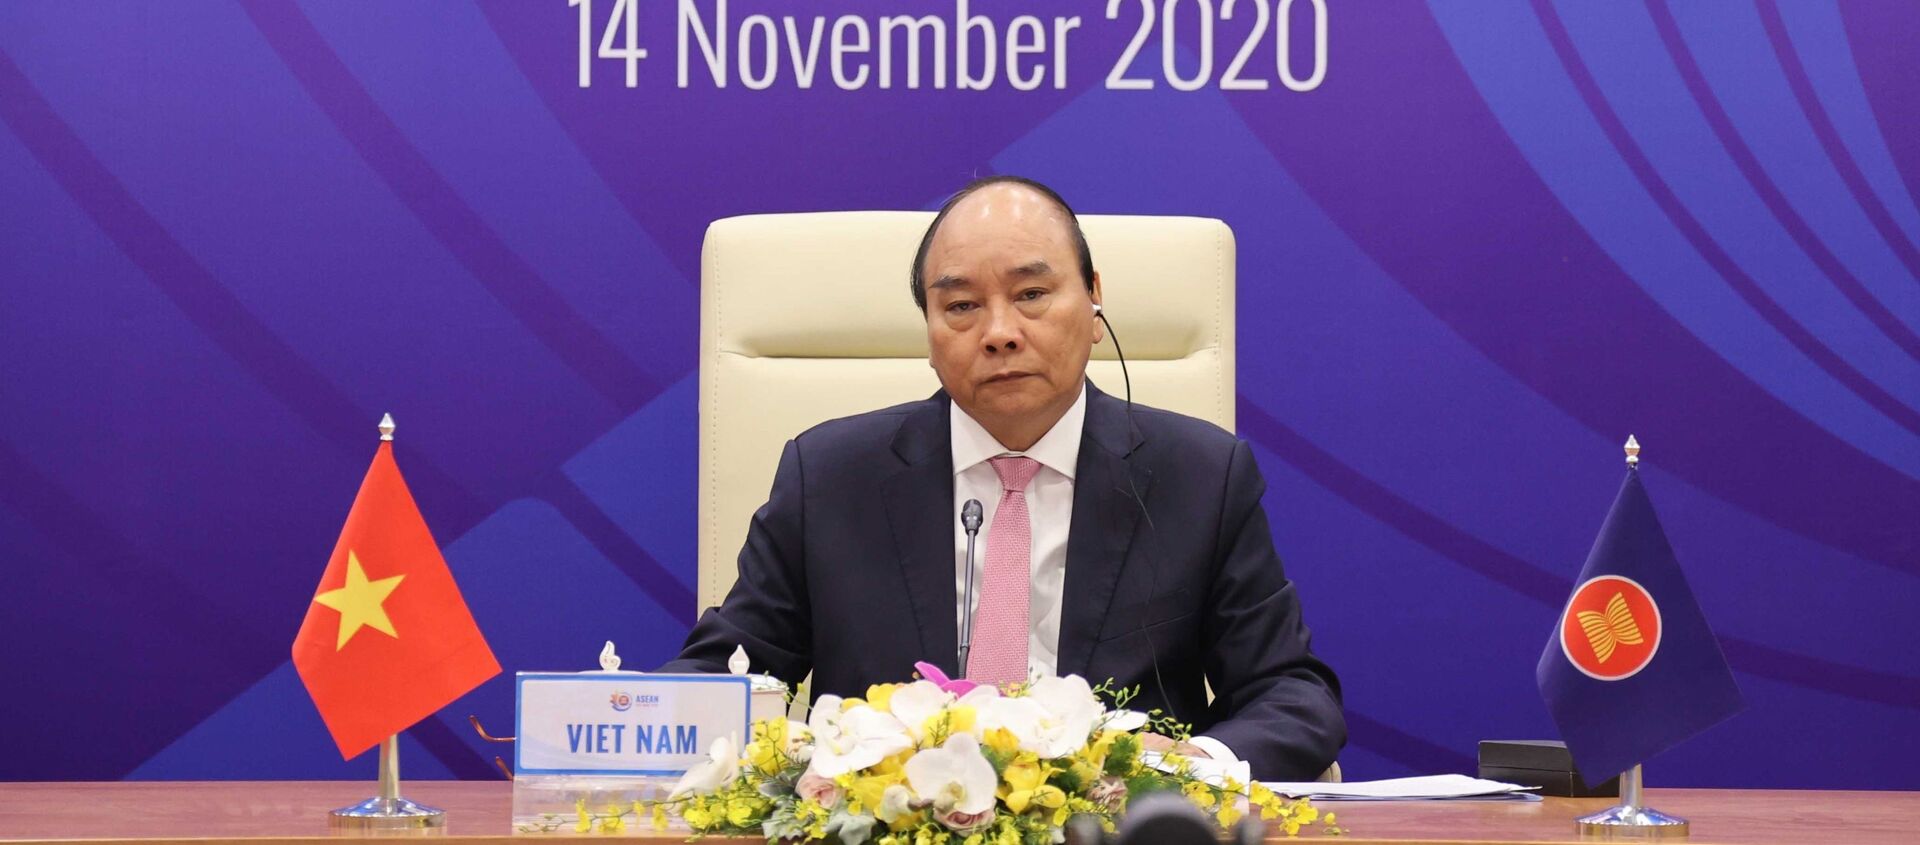 Thủ tướng Nguyễn Xuân Phúc, Chủ tịch ASEAN 2020 chủ trì Hội nghị Cấp cao ASEAN - Hoa Kỳ lần thứ 8 tại điểm cầu Hà Nội - Sputnik Việt Nam, 1920, 14.11.2020